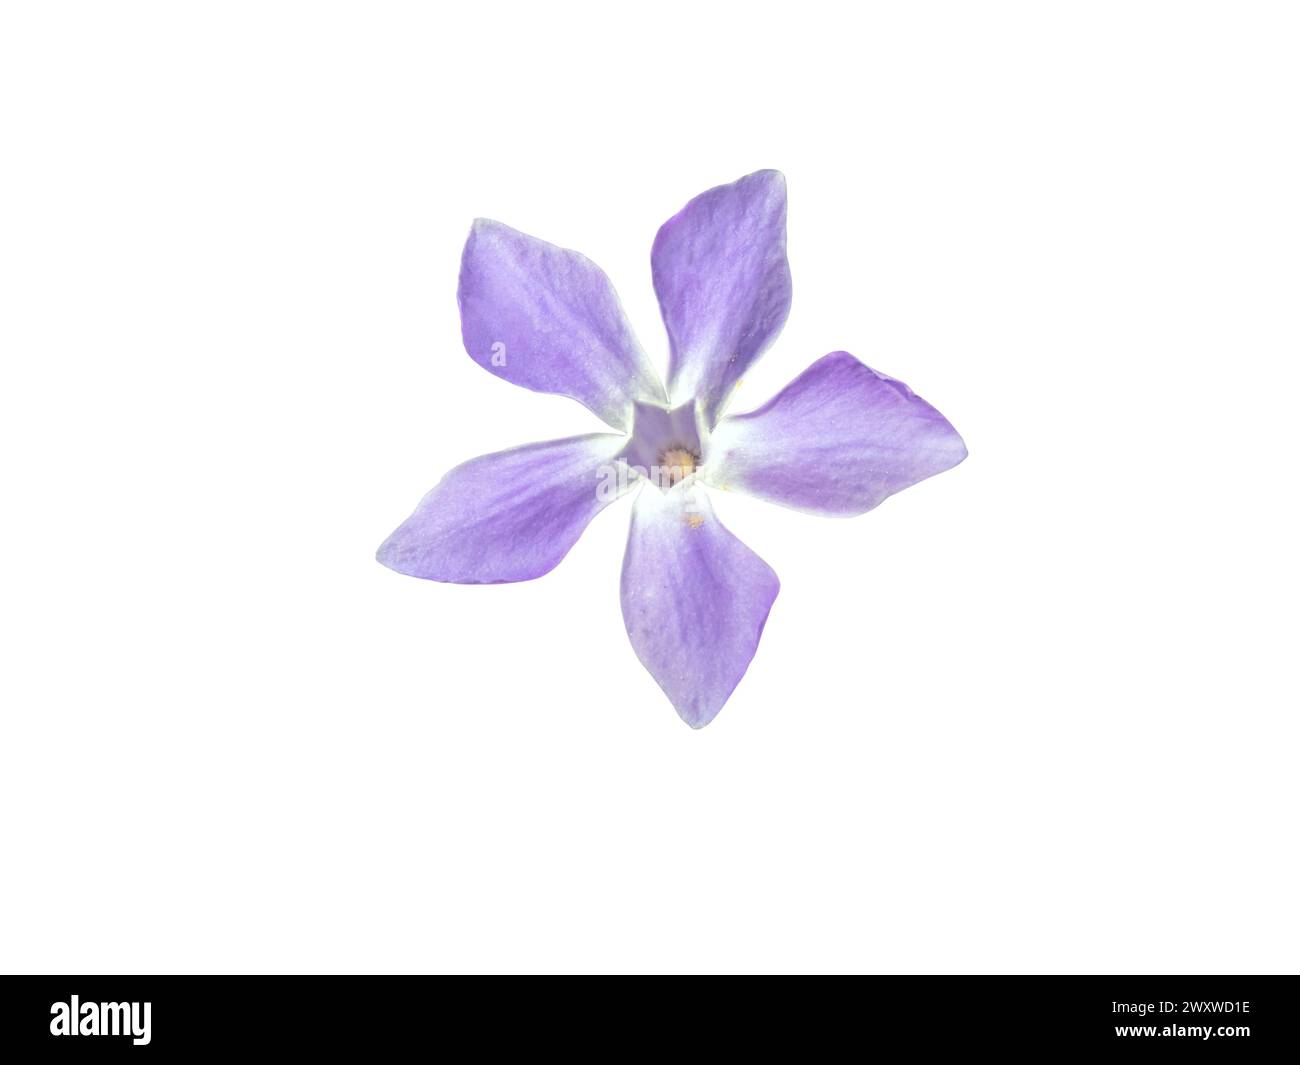 Primo piano del fiore di Periwinkle isolato su bianco. Fiore blu viola della pianta vinca. Foto Stock